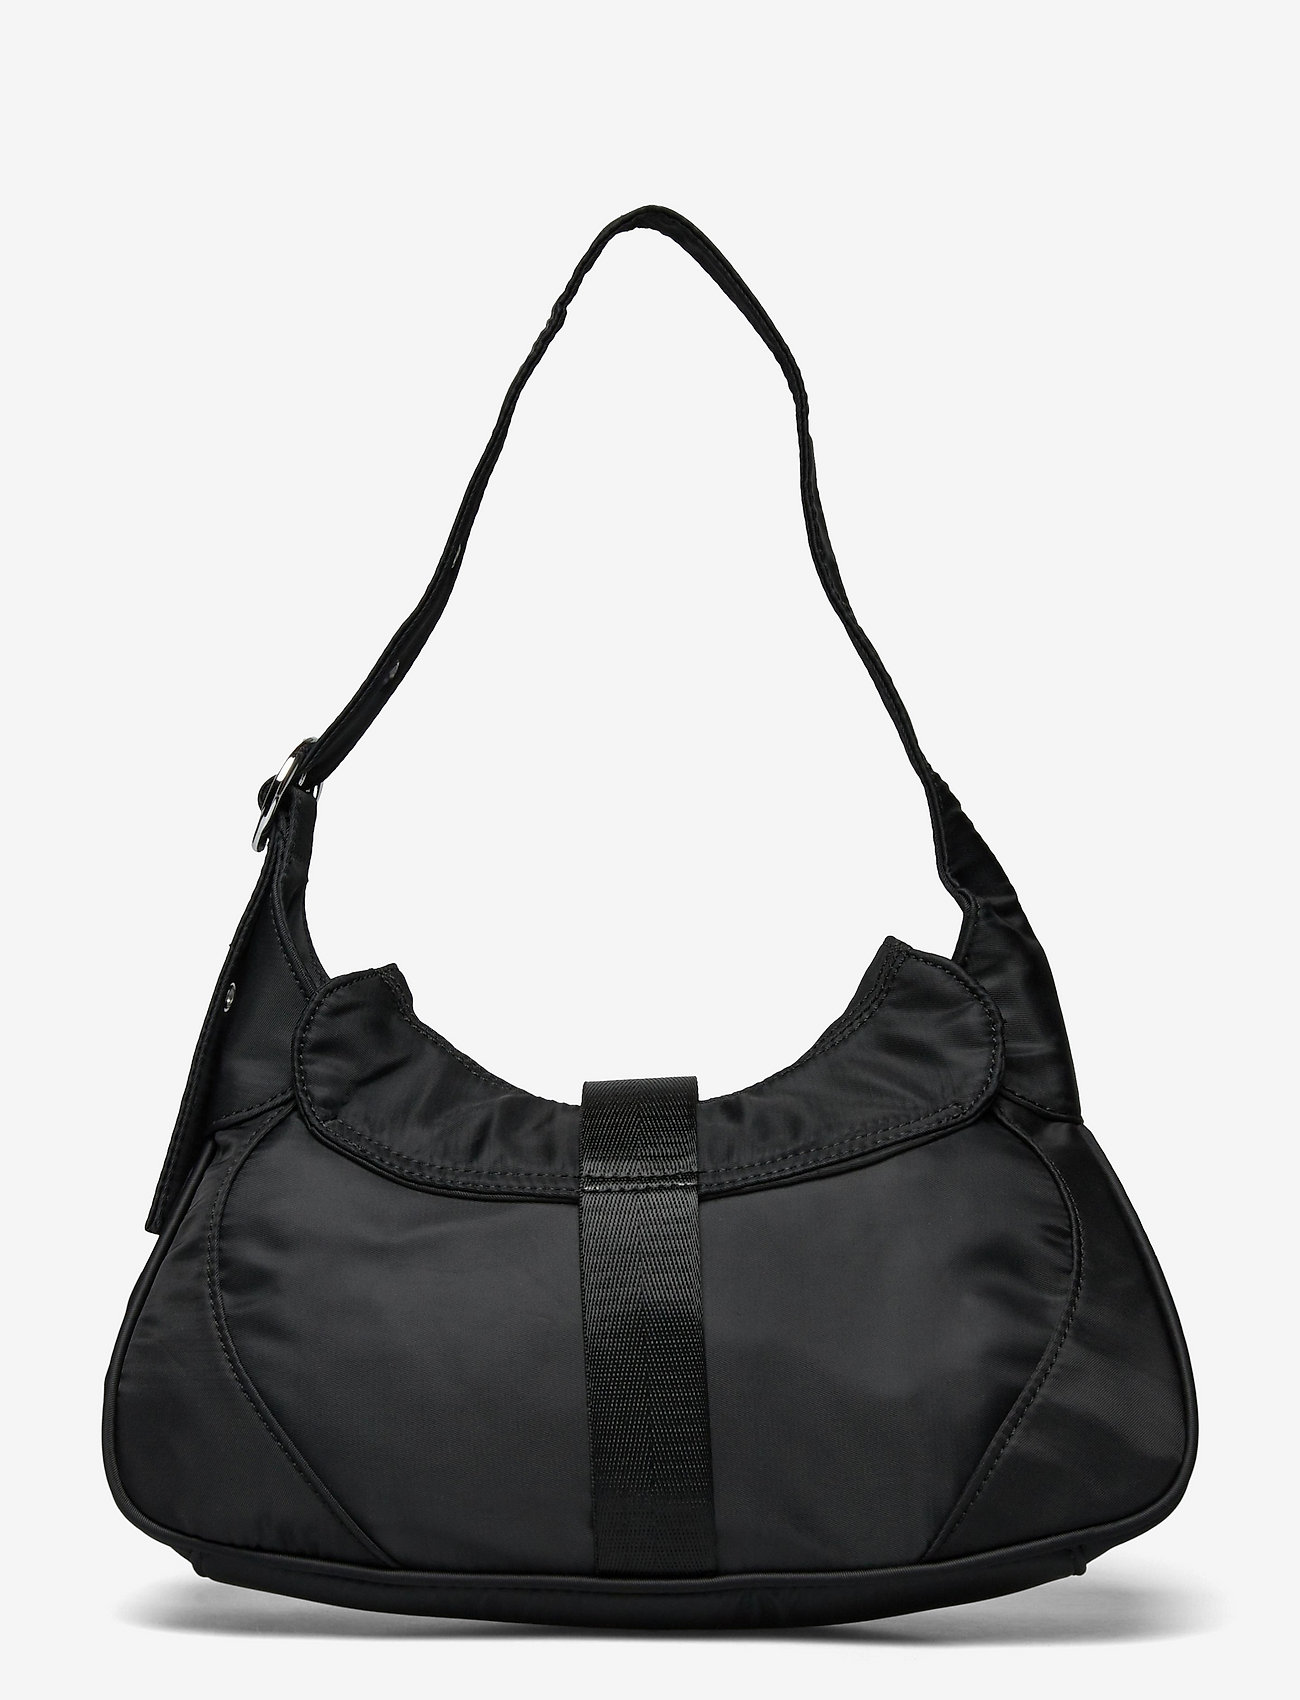 Silfen - Shoulderbag Thea - top handle - black - 1